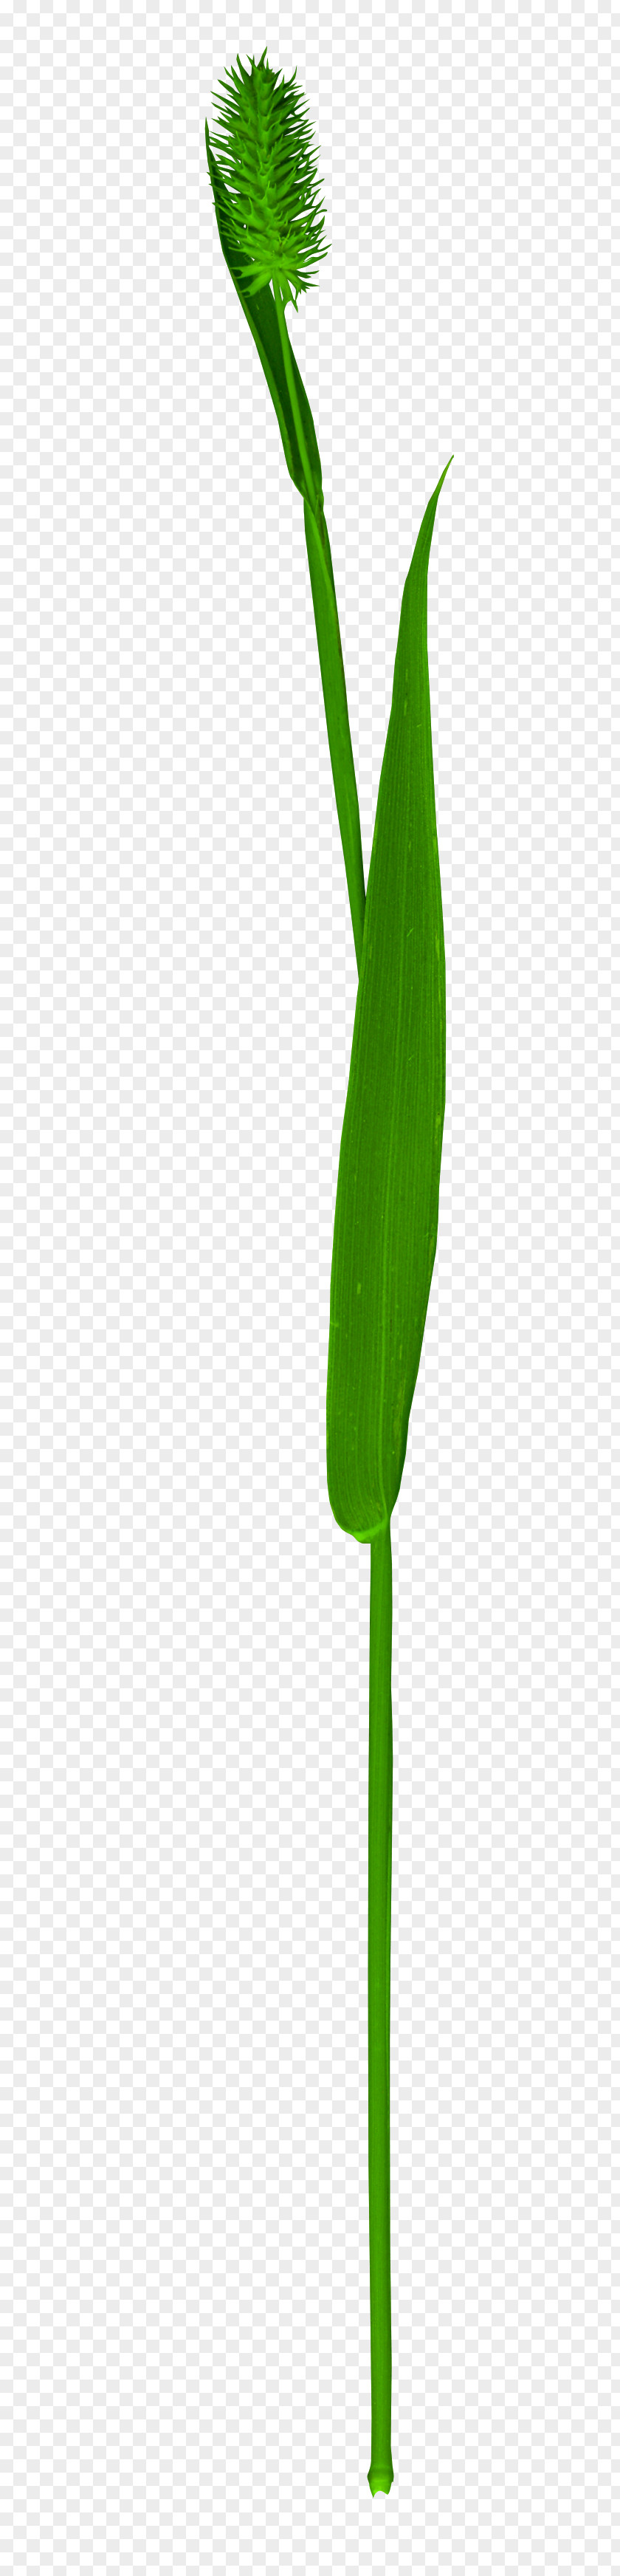 Green Grass Leaf Plant Stem Flower PNG